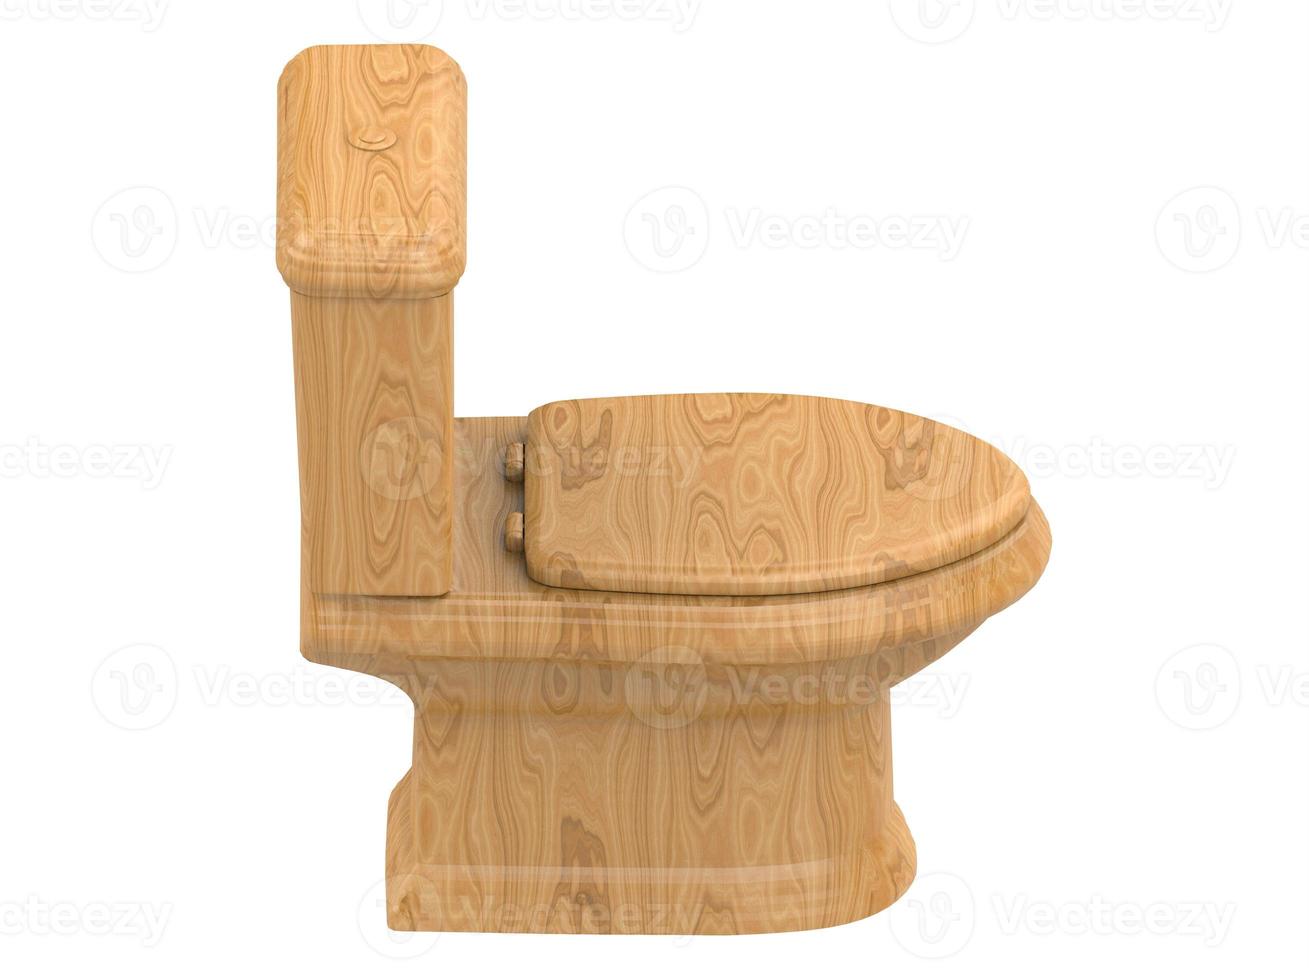 hout wc toilet watercloset 3d illustratie 3d illustratie3d illustratie foto